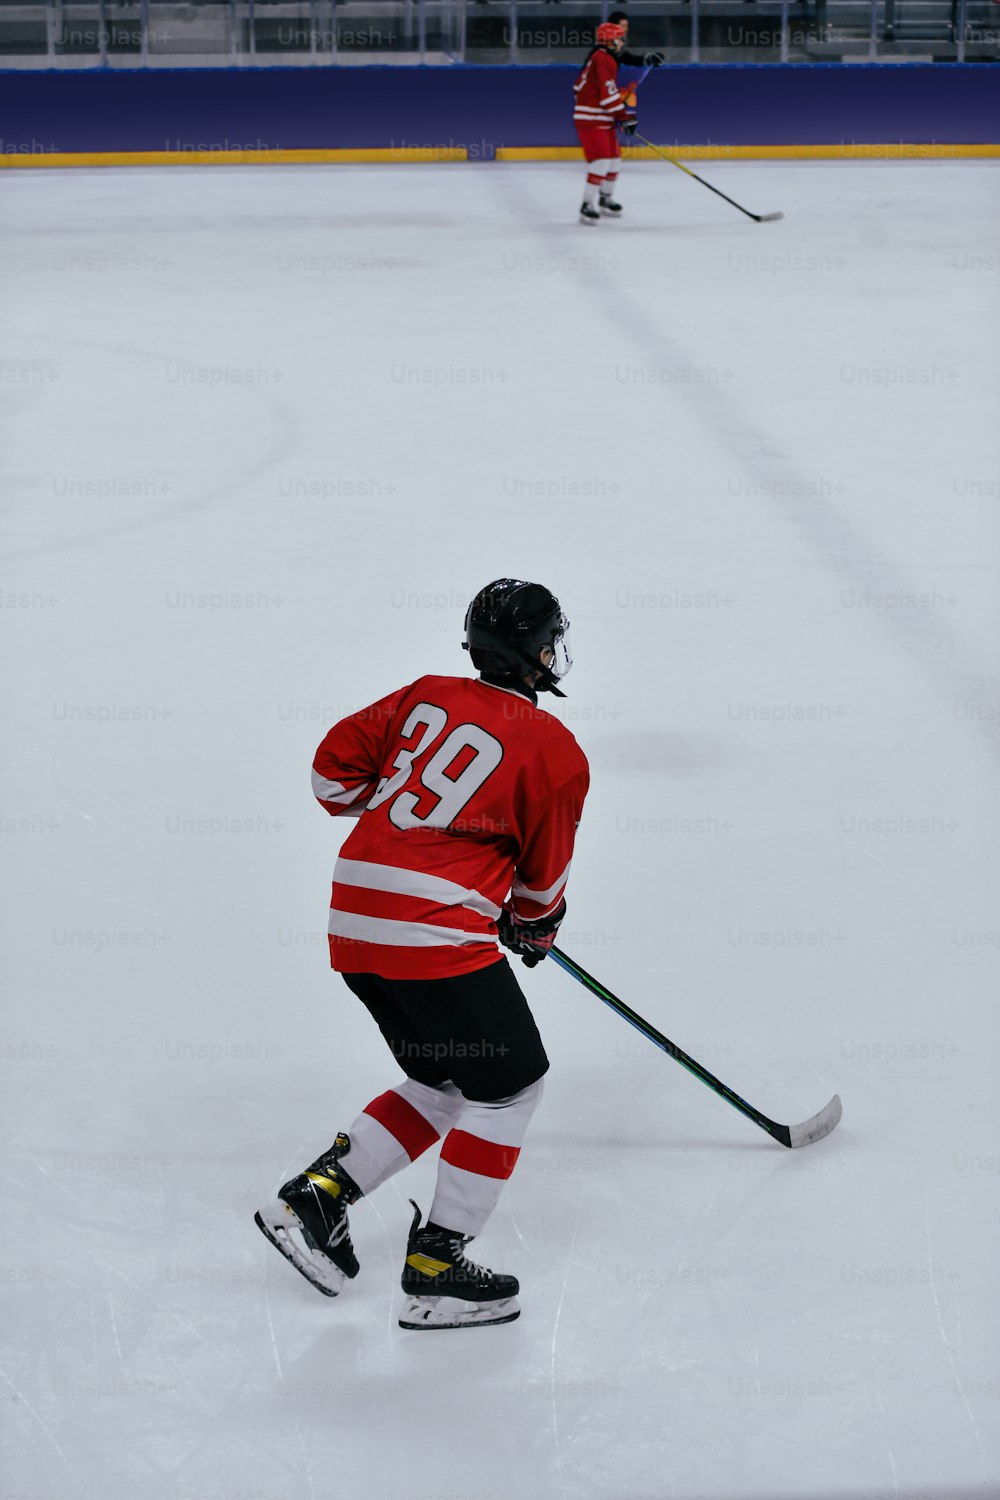 Ein Eishockeyspieler im roten Trikot beim Eislaufen